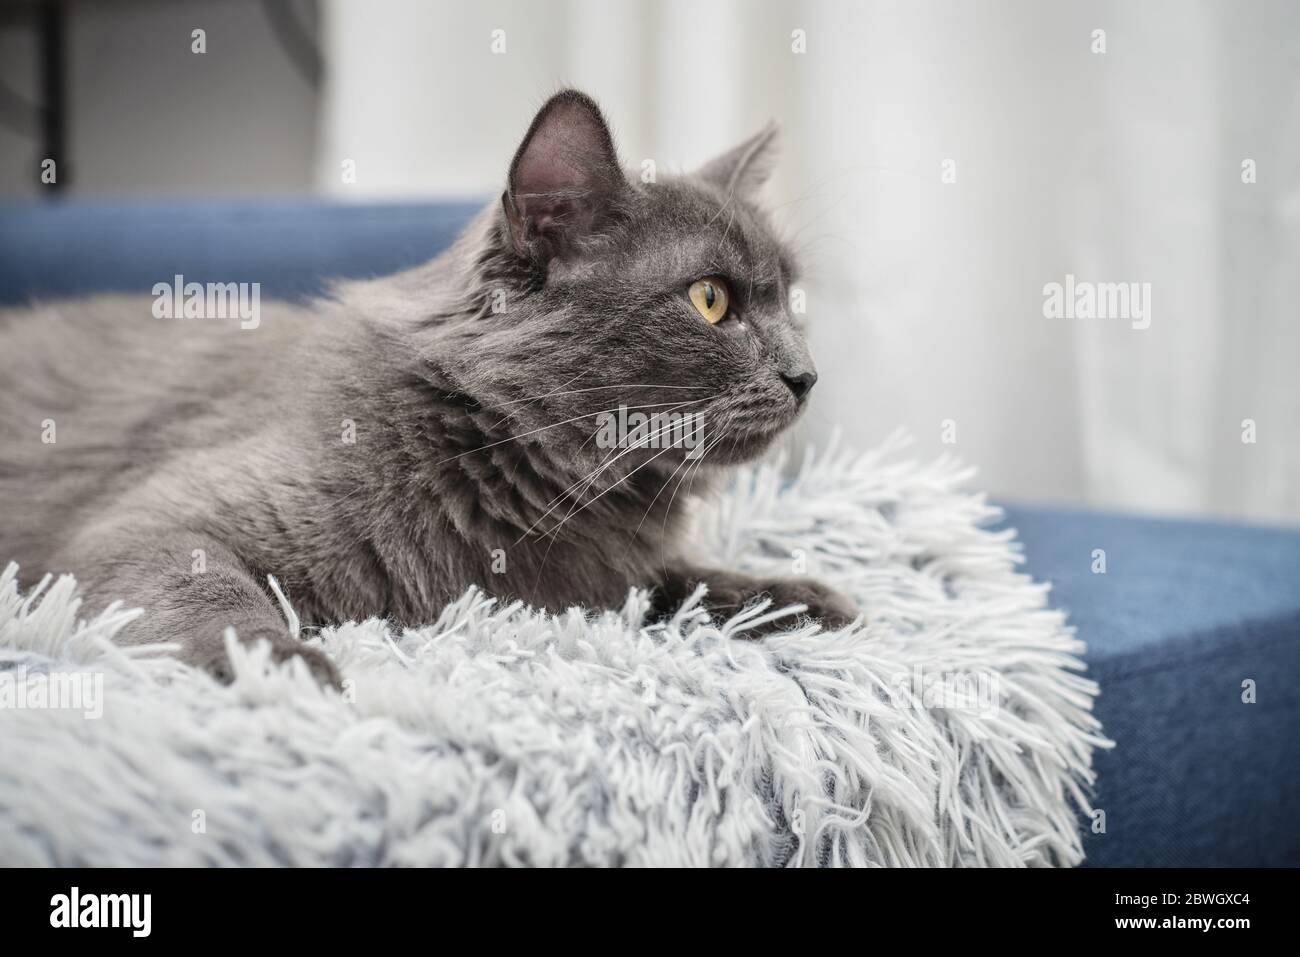 Graue Katze Nebelkatze liegt zu Hause auf dem Sofa. Nebelung-eine seltene Rasse, ähnlich wie das russische Blau, mit bis auf mittlere Länge seidigen Haaren. Stockfoto